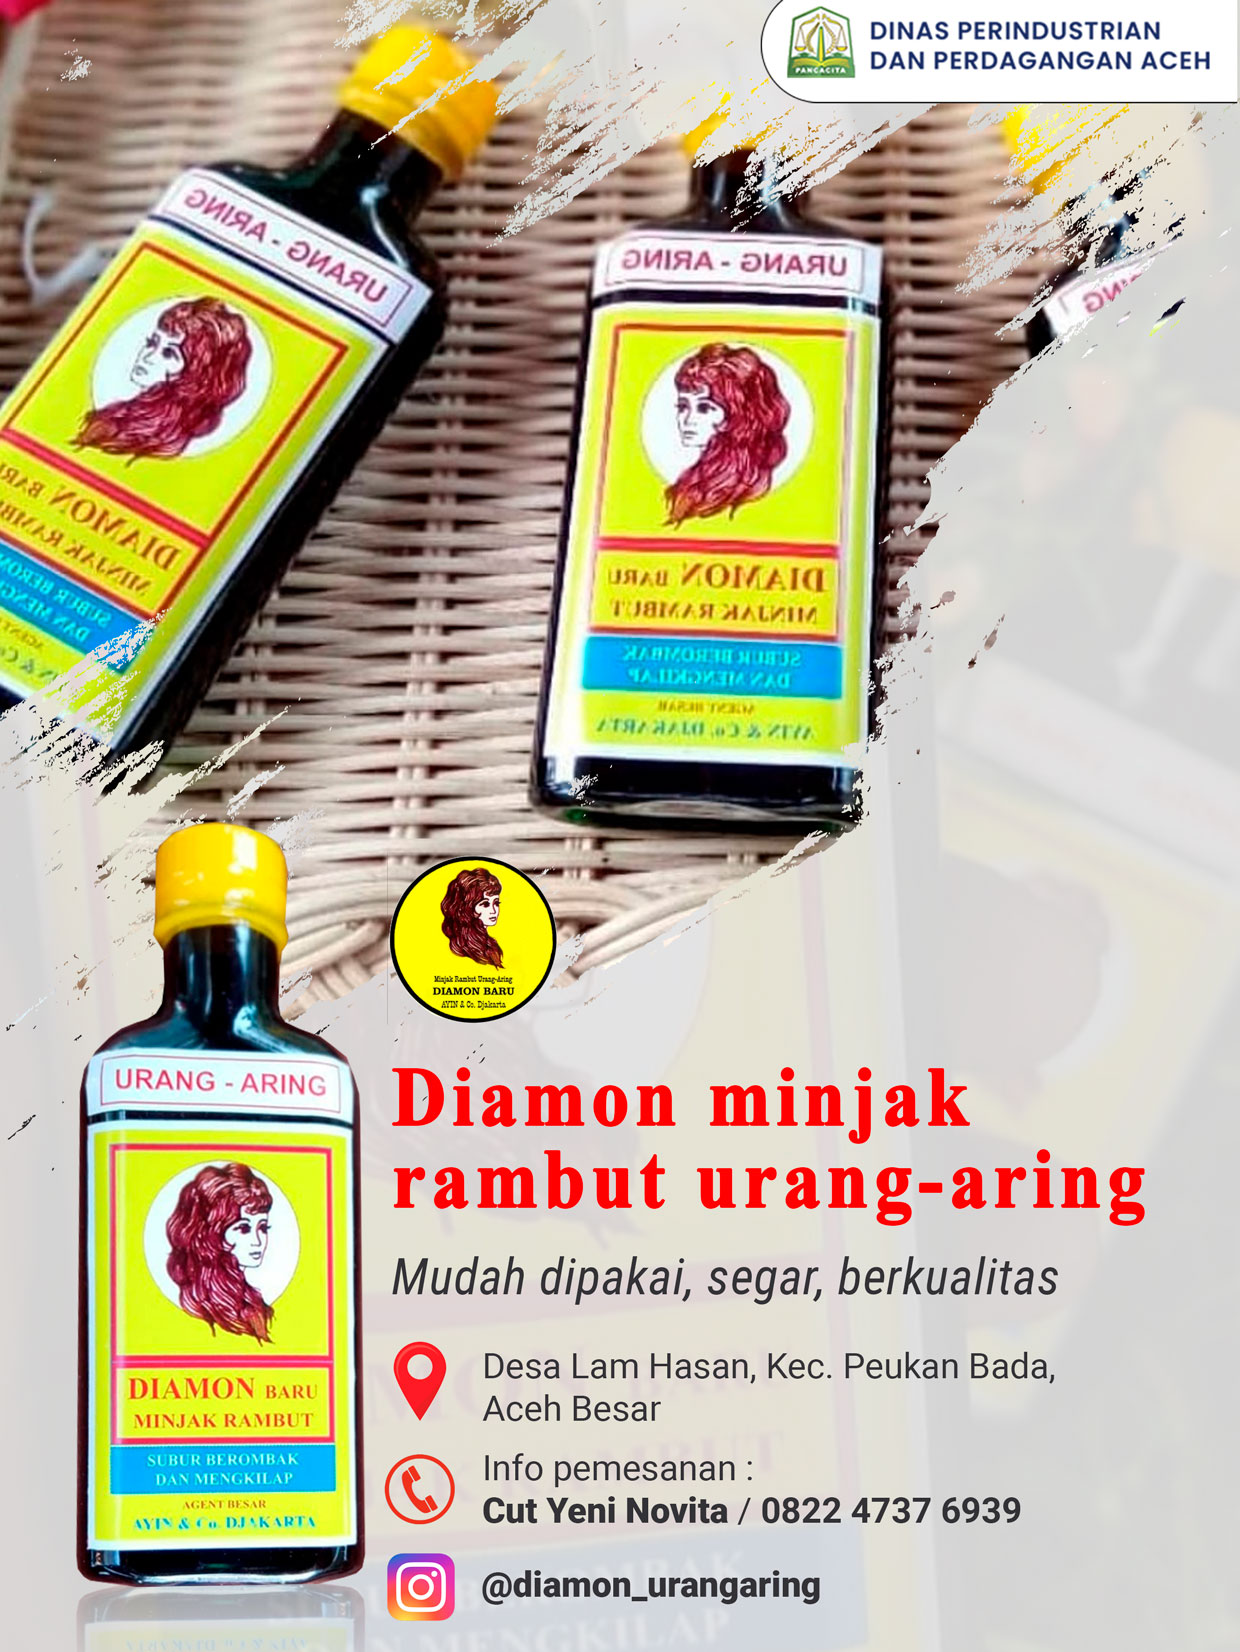 Diamon minjak rambut urang-aring – Disperindag Aceh